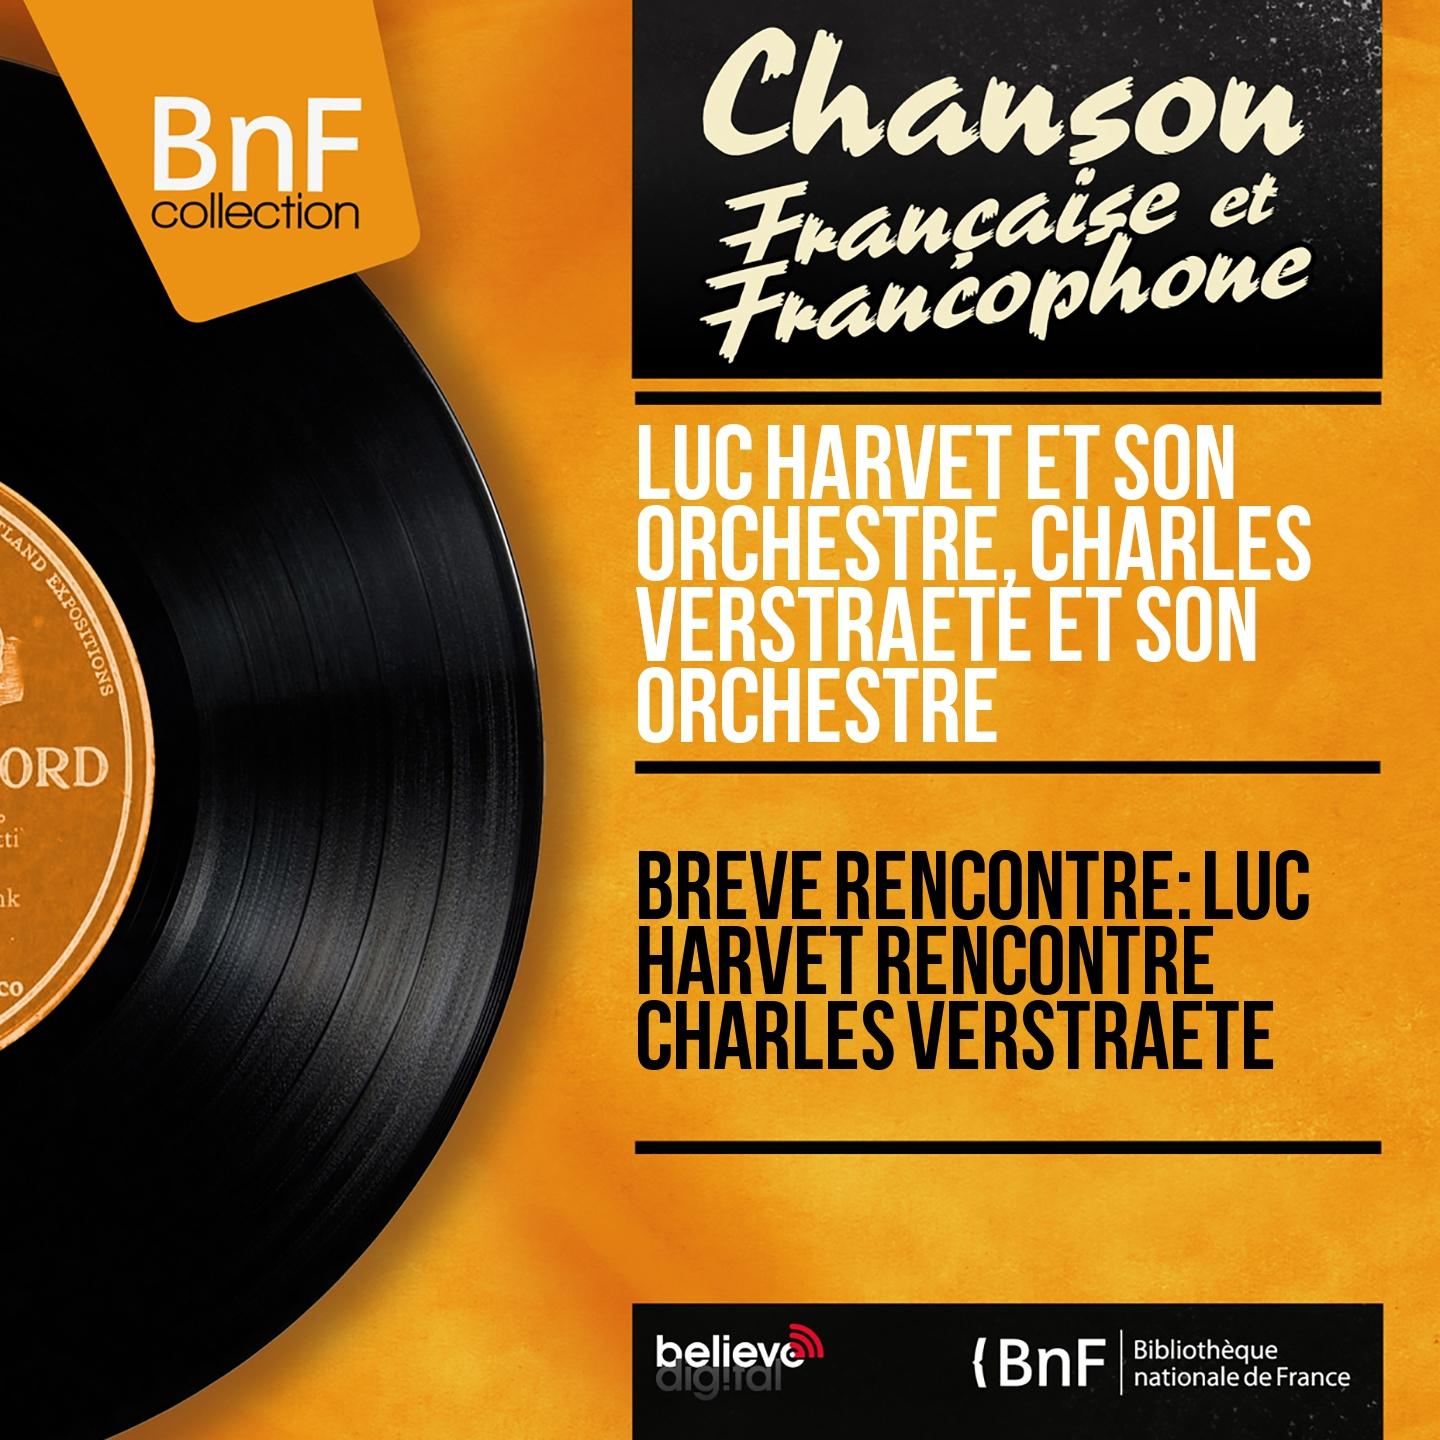 Постер альбома Brève rencontre: Luc Harvet rencontre Charles Verstraete (Mono Version)